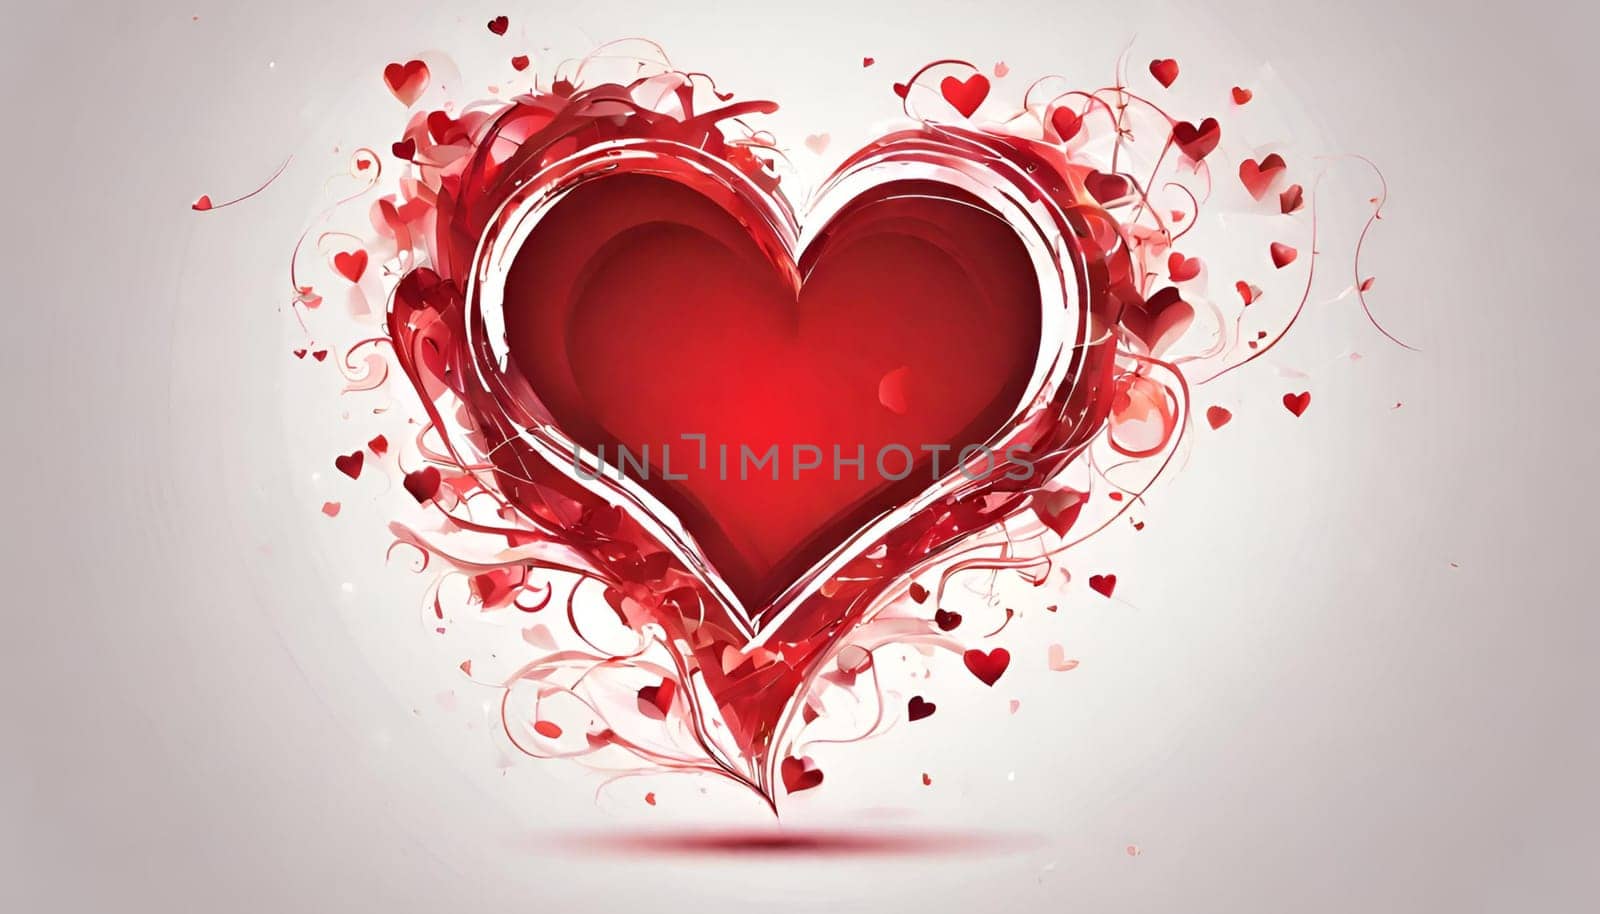 Valentine's Day - creative heart art, red valentines Day heart design.Happy Valentine's day by Designlab